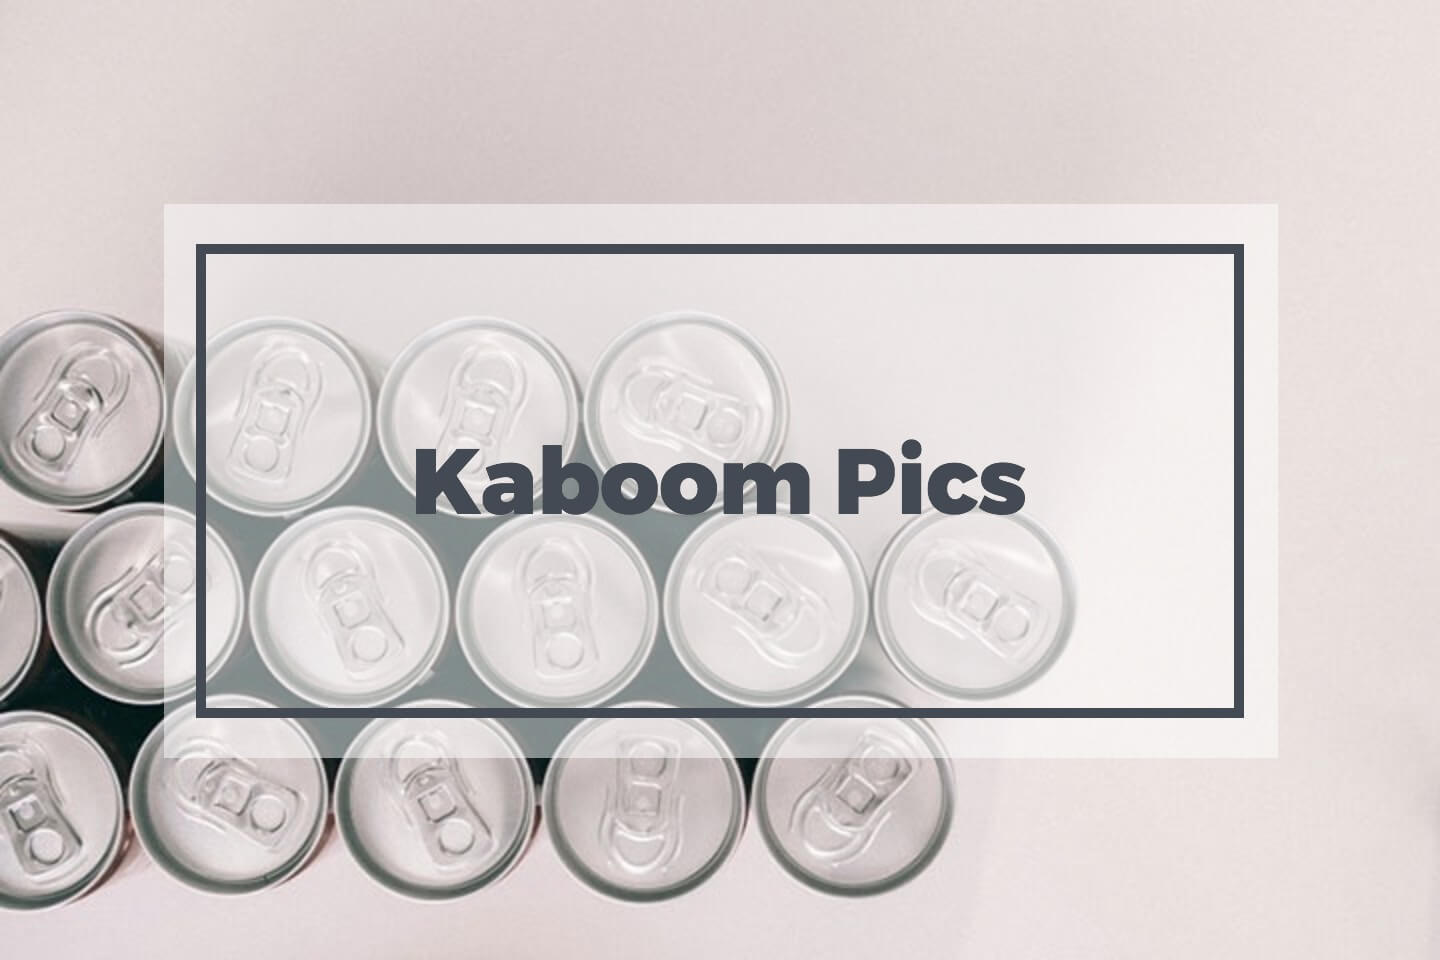 Kaboom Pics stock photos